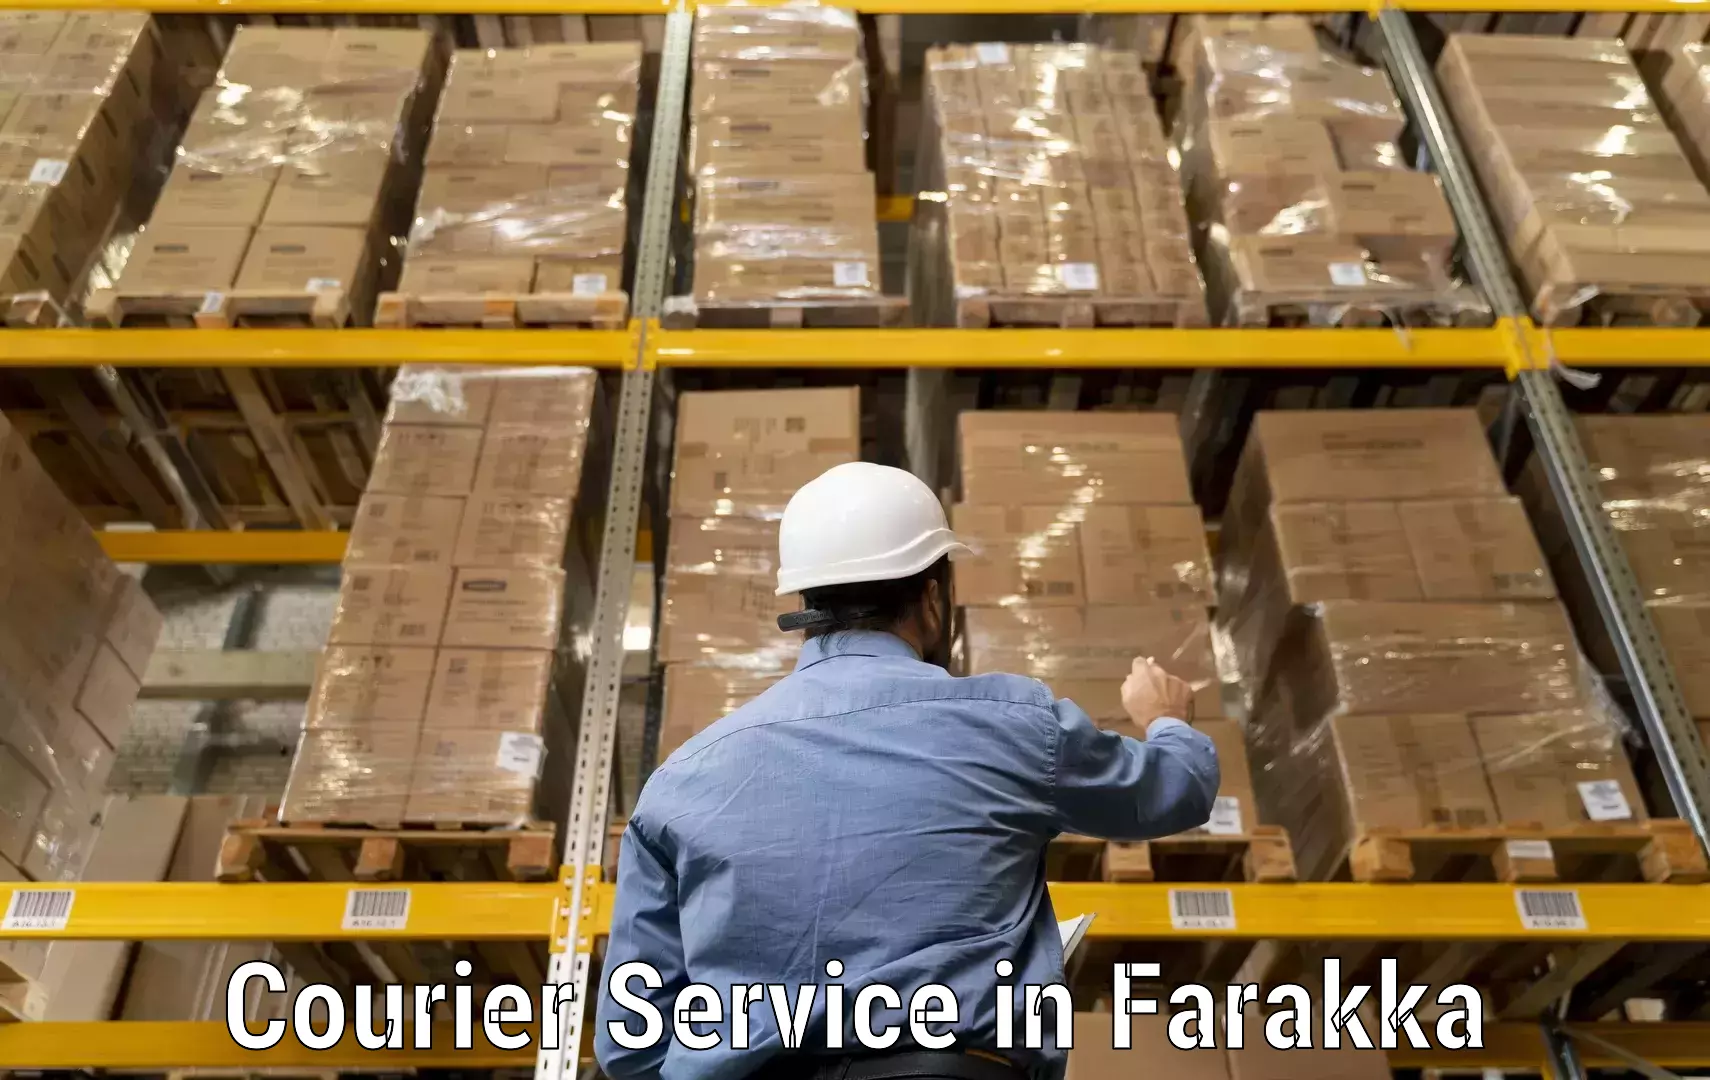 Next-day freight services in Farakka